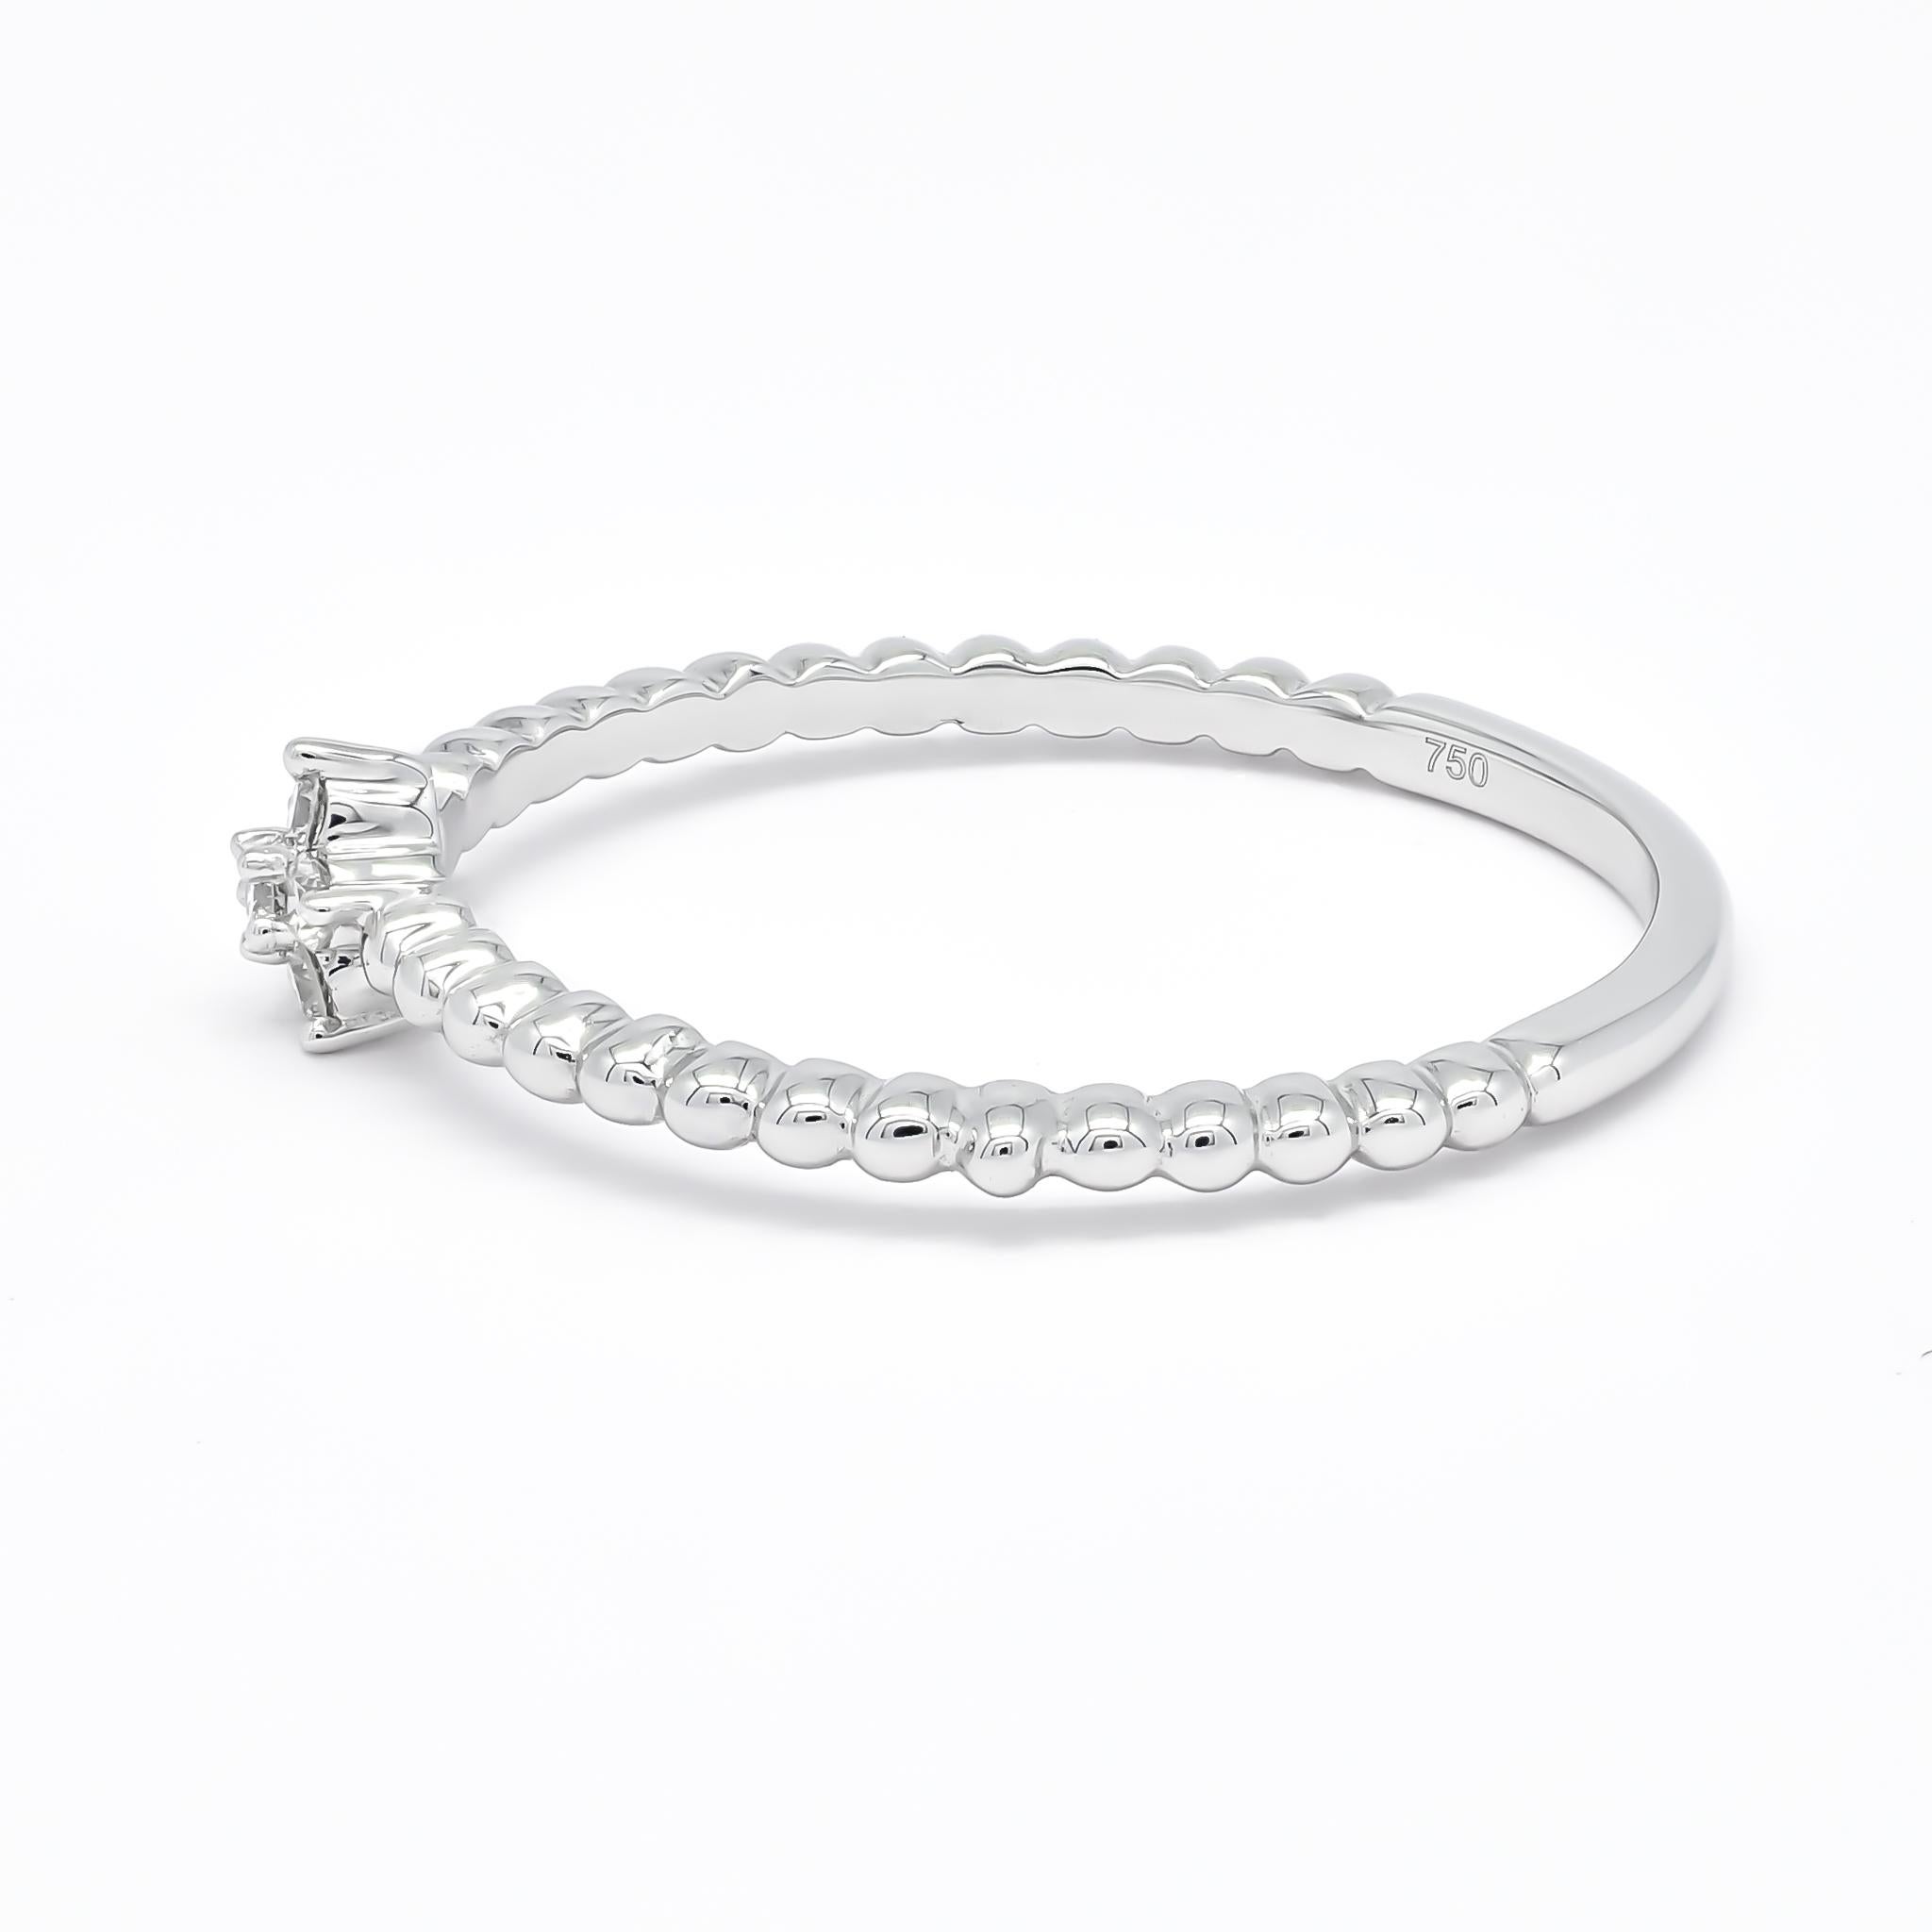 Der zierliche, schlichte Ring mit Perlenbesatz ist ein zartes und charmantes Schmuckstück. Er zeichnet sich durch eine Gruppe winziger Blüten aus, die aus einem runden Brillanten gefertigt sind. Das perlenbesetzte Band verleiht dem Ring einen